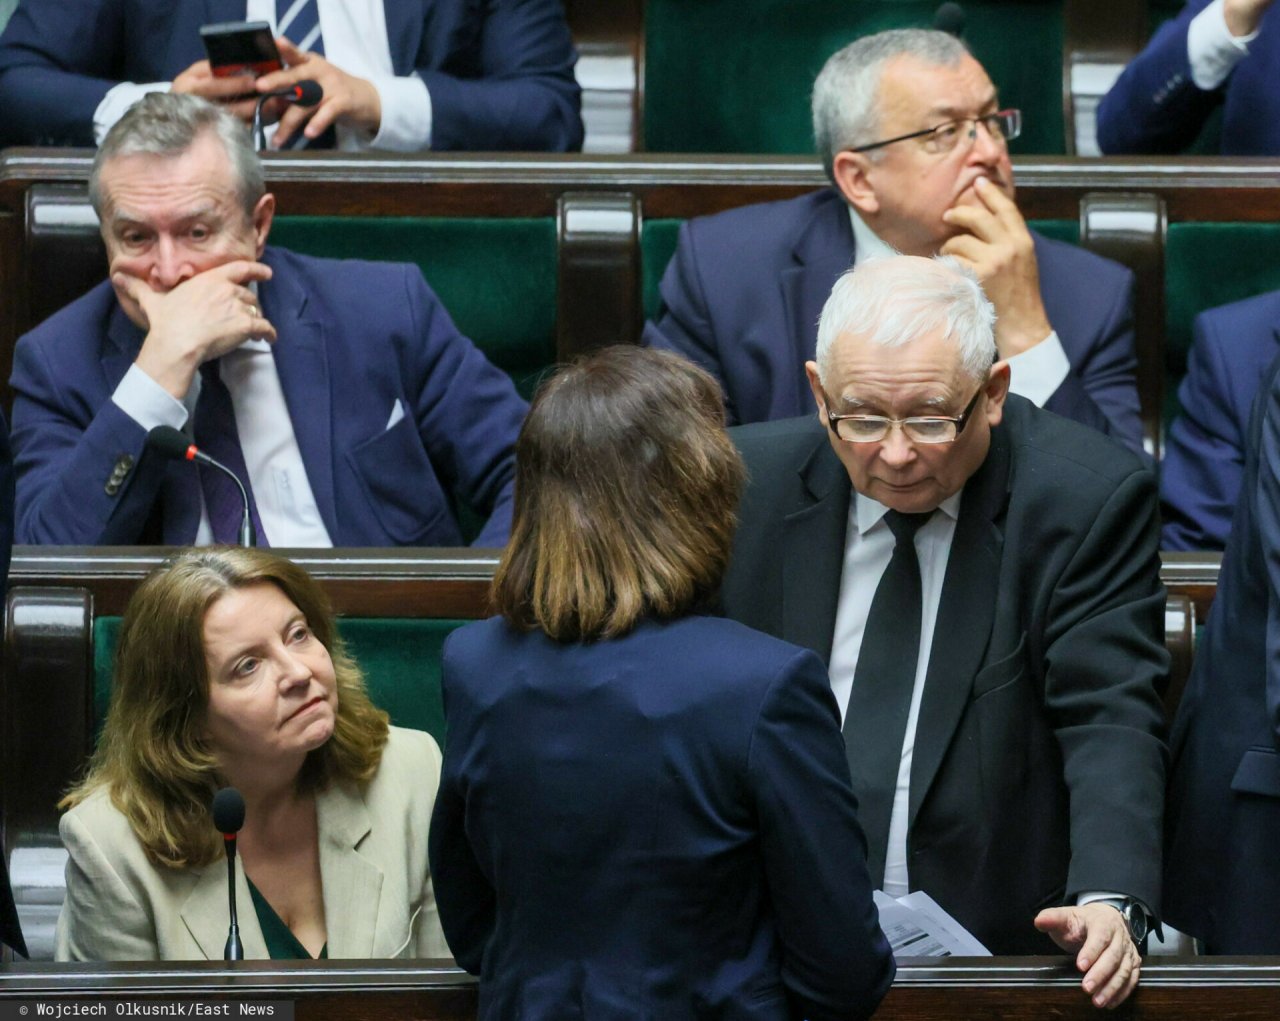 Jarosław Kaczyński w okularach i garniturze